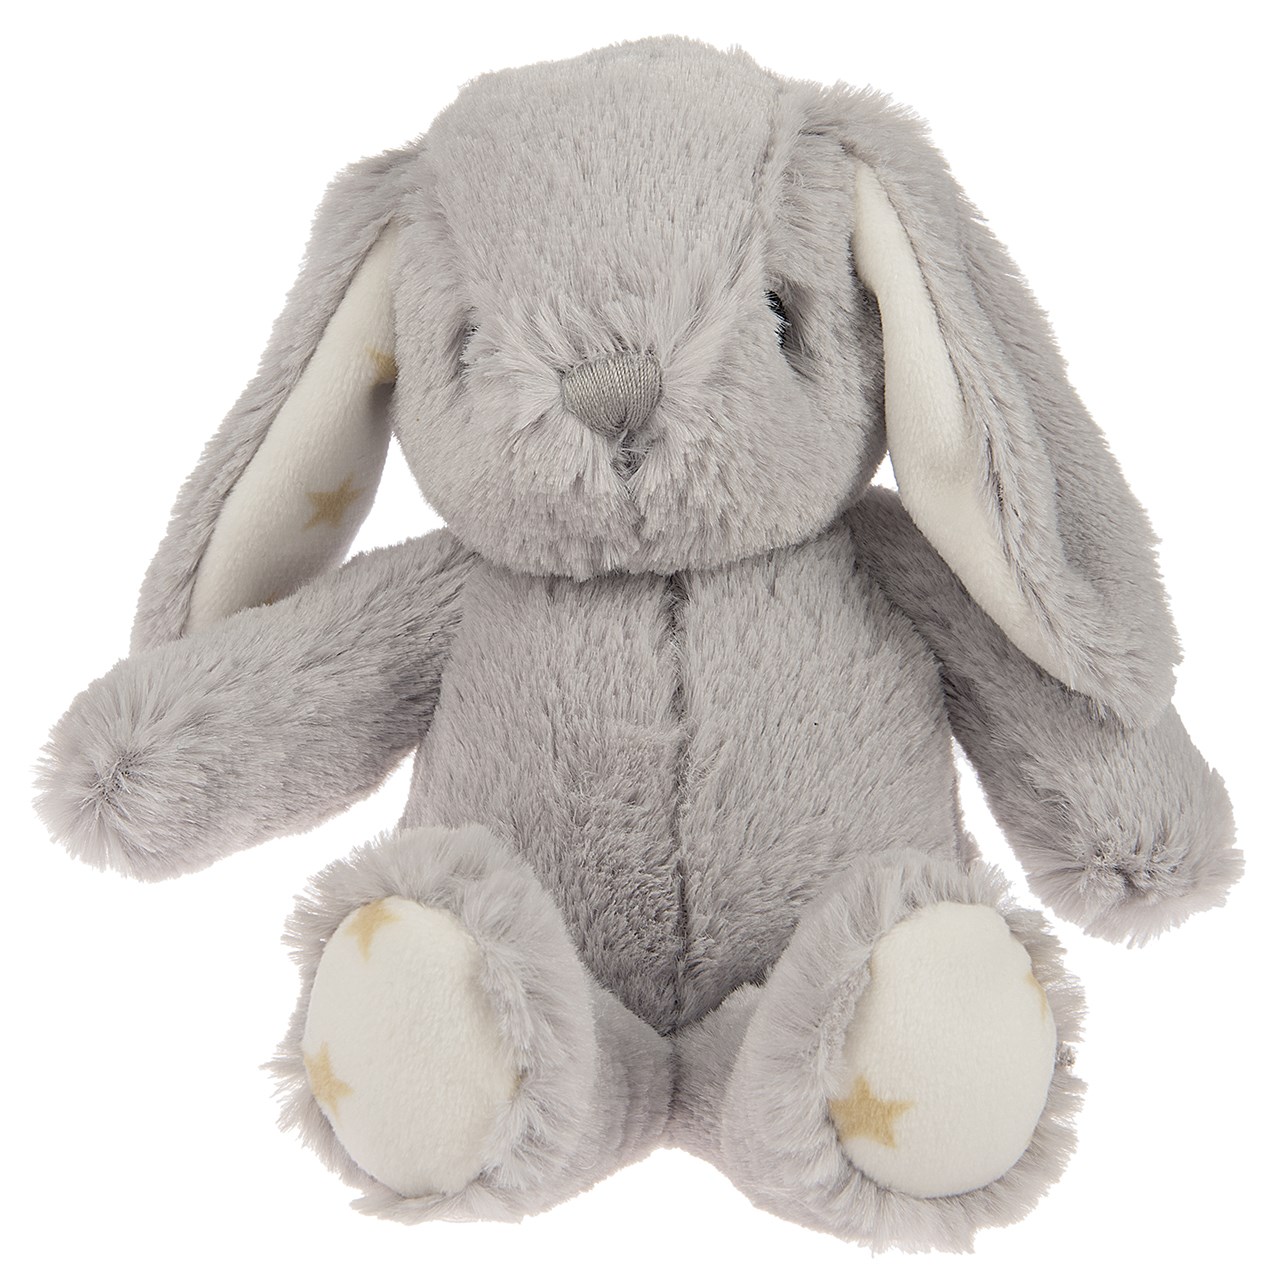 آویز تخت کلود-بی مدل Hugginz Grey Bunny